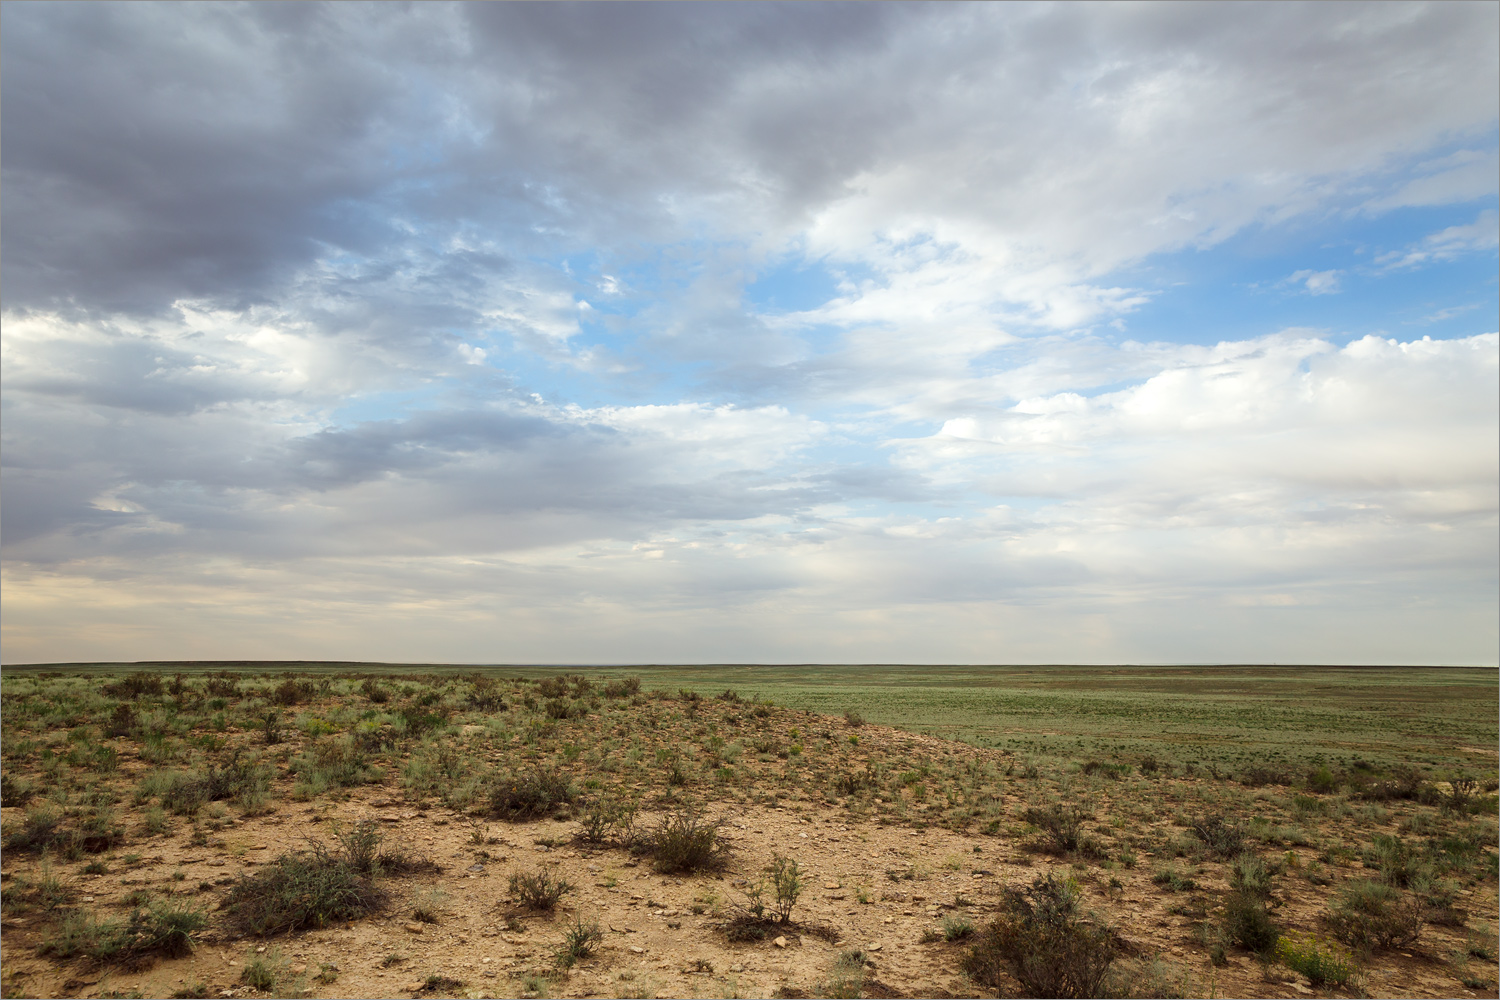 480 км трассы А-33 (Казахстан), изображение ландшафта.